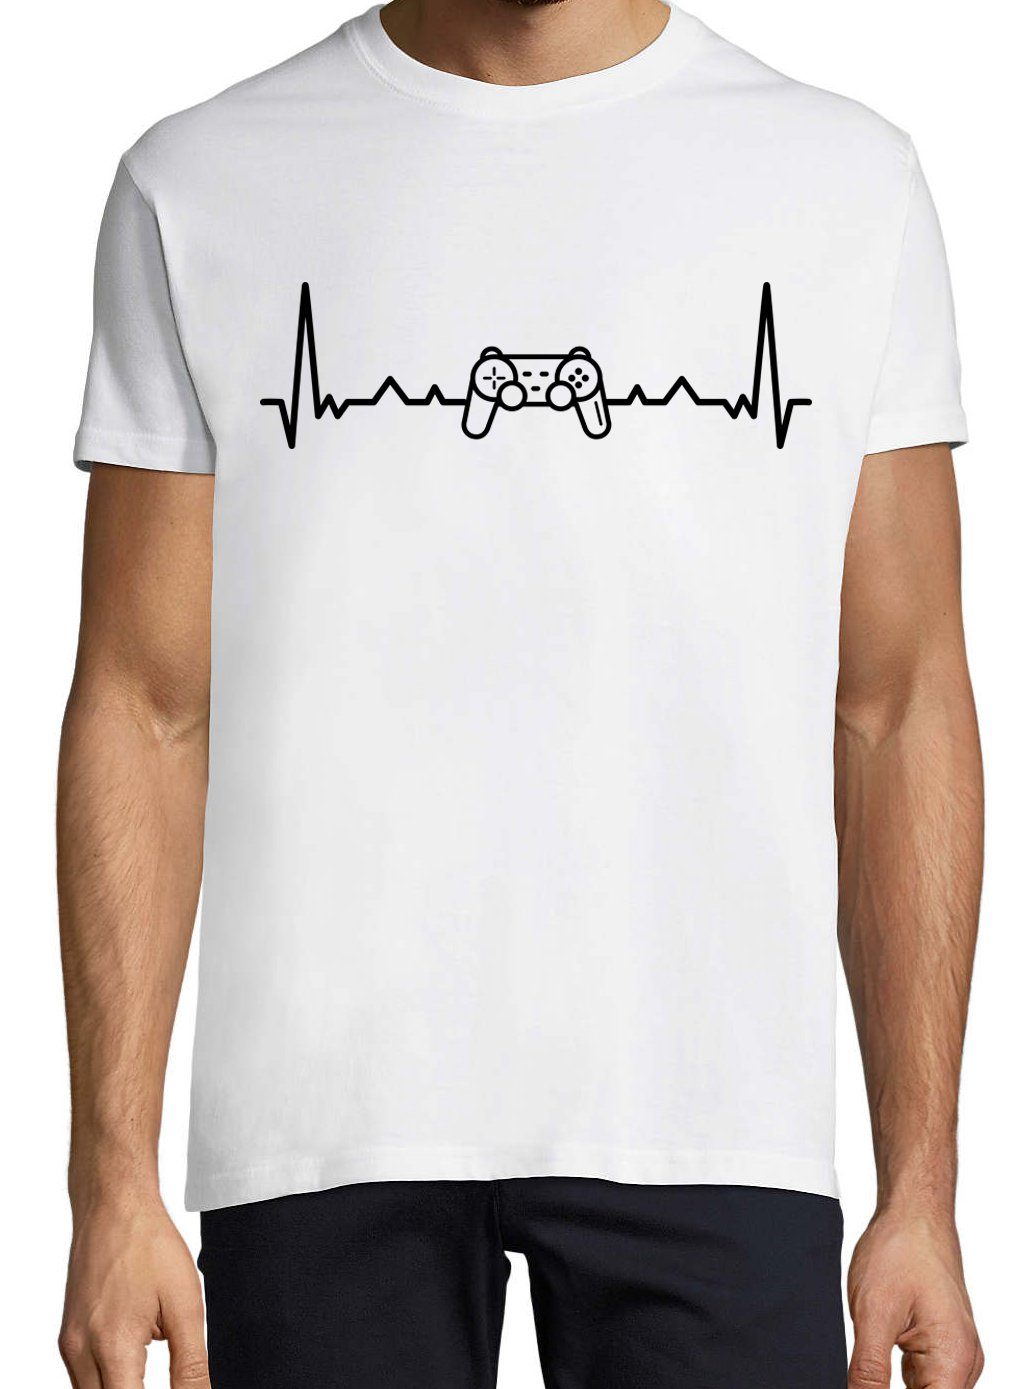 Weiß Designz Herren T-Shirt Controller Motiv Youth Shirt mit Gaming trendigem Herzschlag